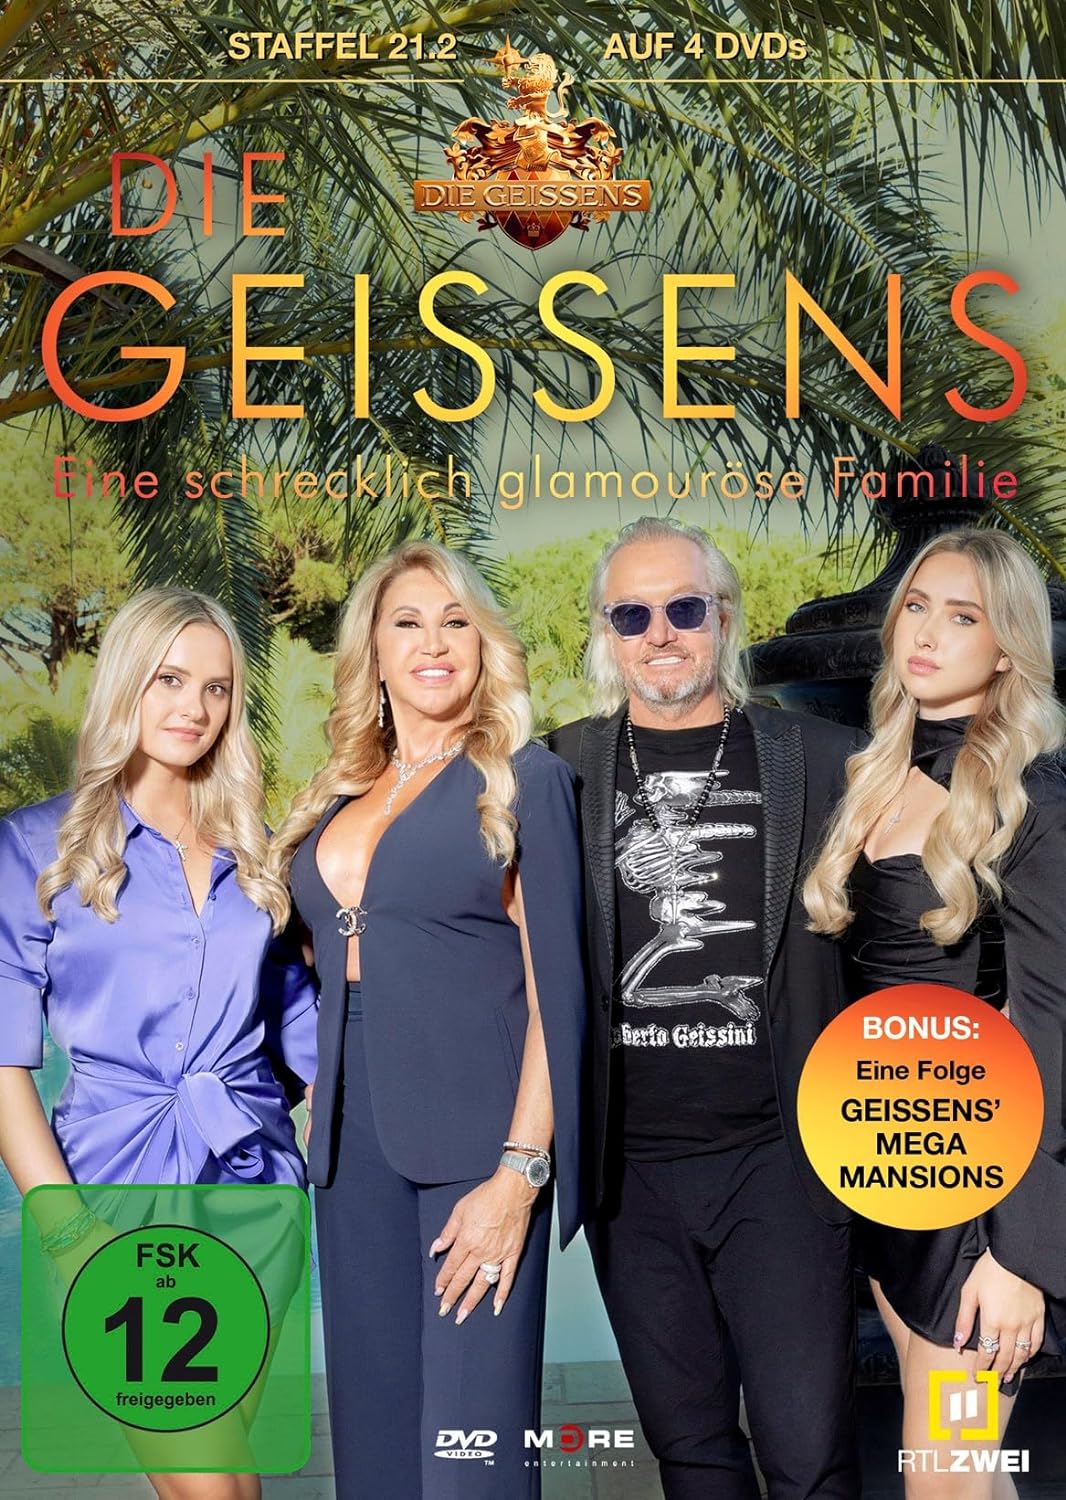 Die Geissens - Staffel 21.2  [4 DVDs]  (DVD)